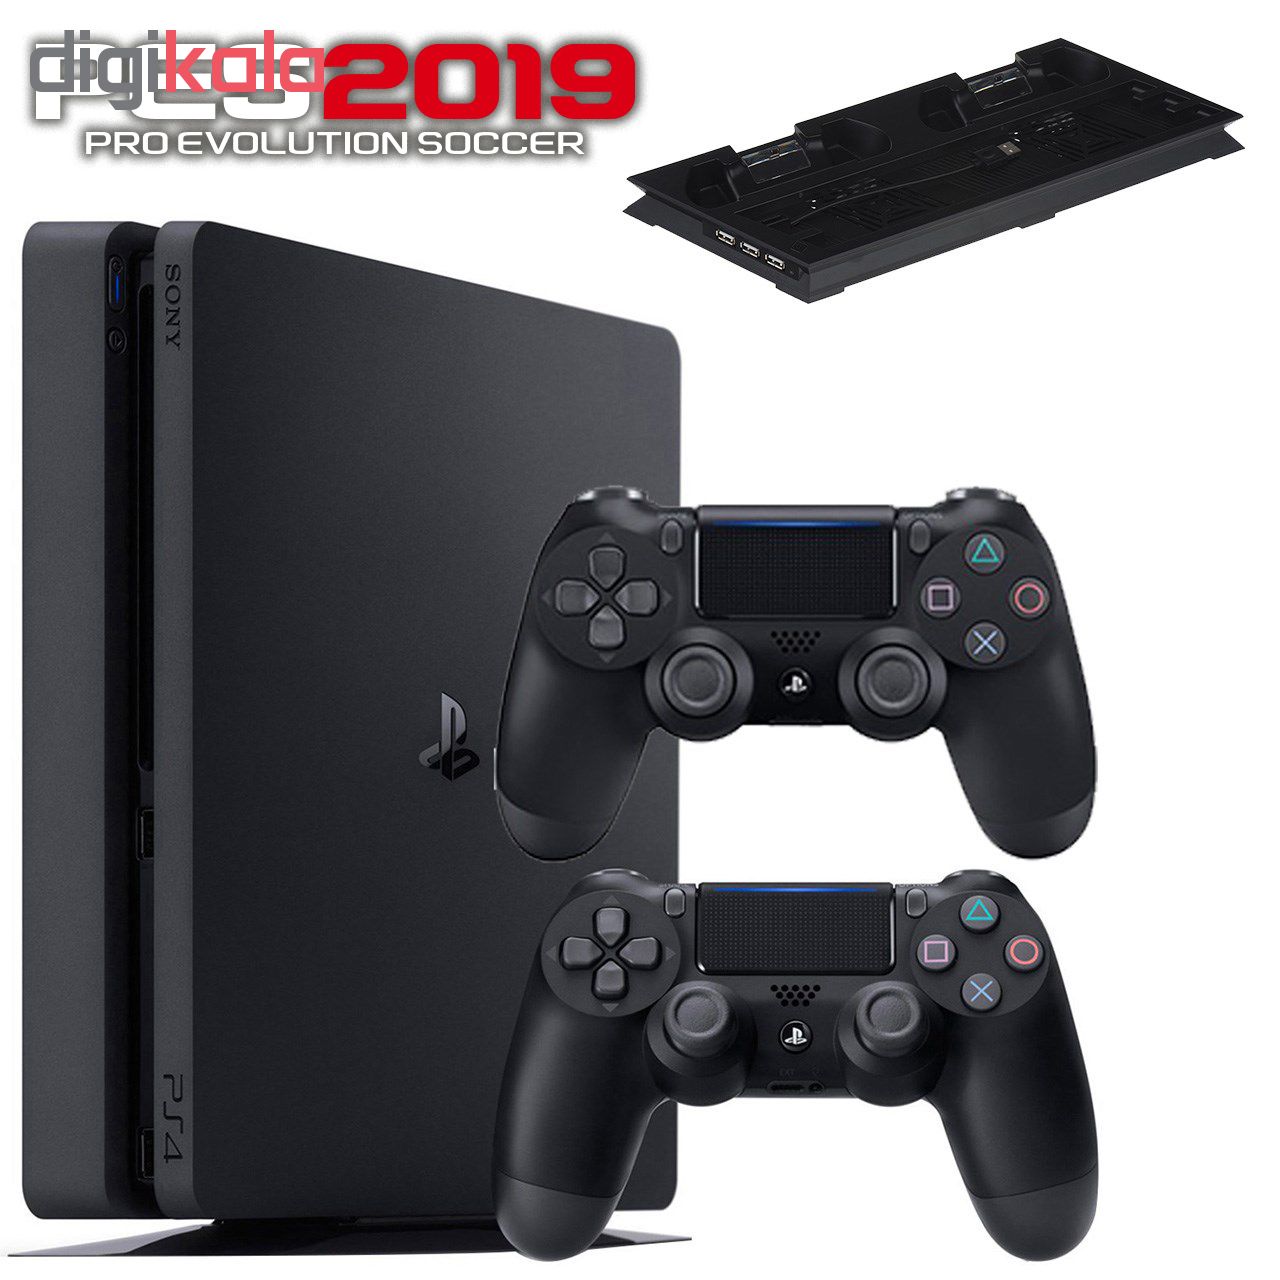 مجموعه کنسول بازی سونی مدل Playstation 4 Slim 2018 کد Region 2 CUH-2216B ظرفیت 1 ترابایت